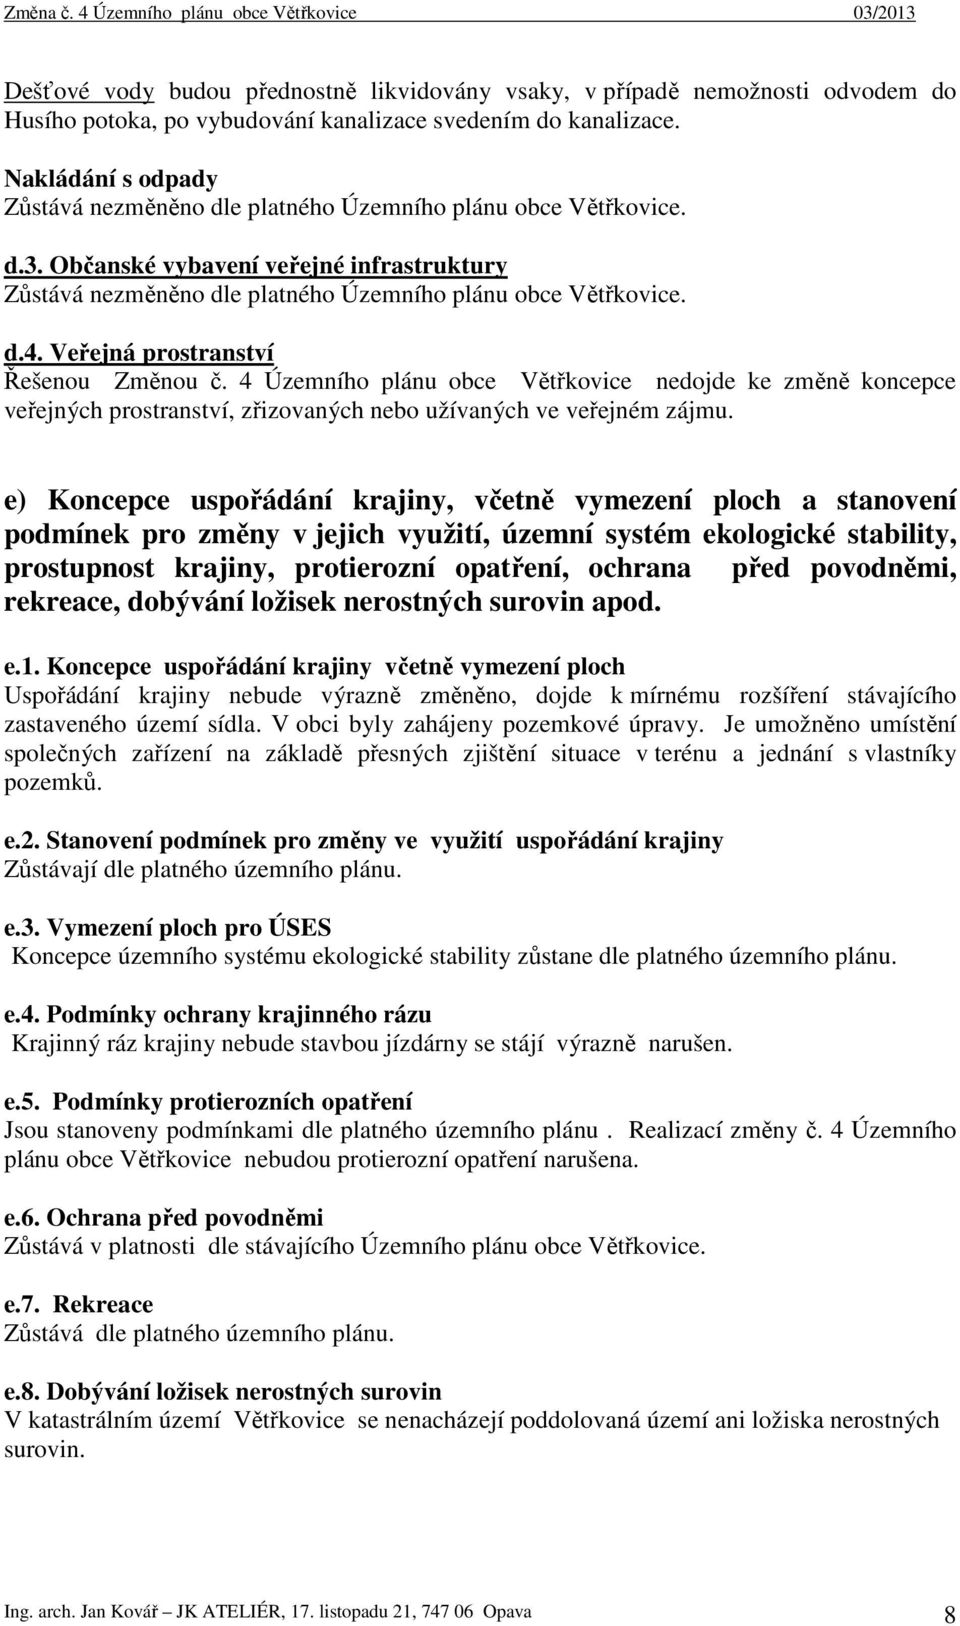 Veřejná prostranství Řešenou Změnou č. 4 Územního plánu obce Větřkovice nedojde ke změně koncepce veřejných prostranství, zřizovaných nebo užívaných ve veřejném zájmu.